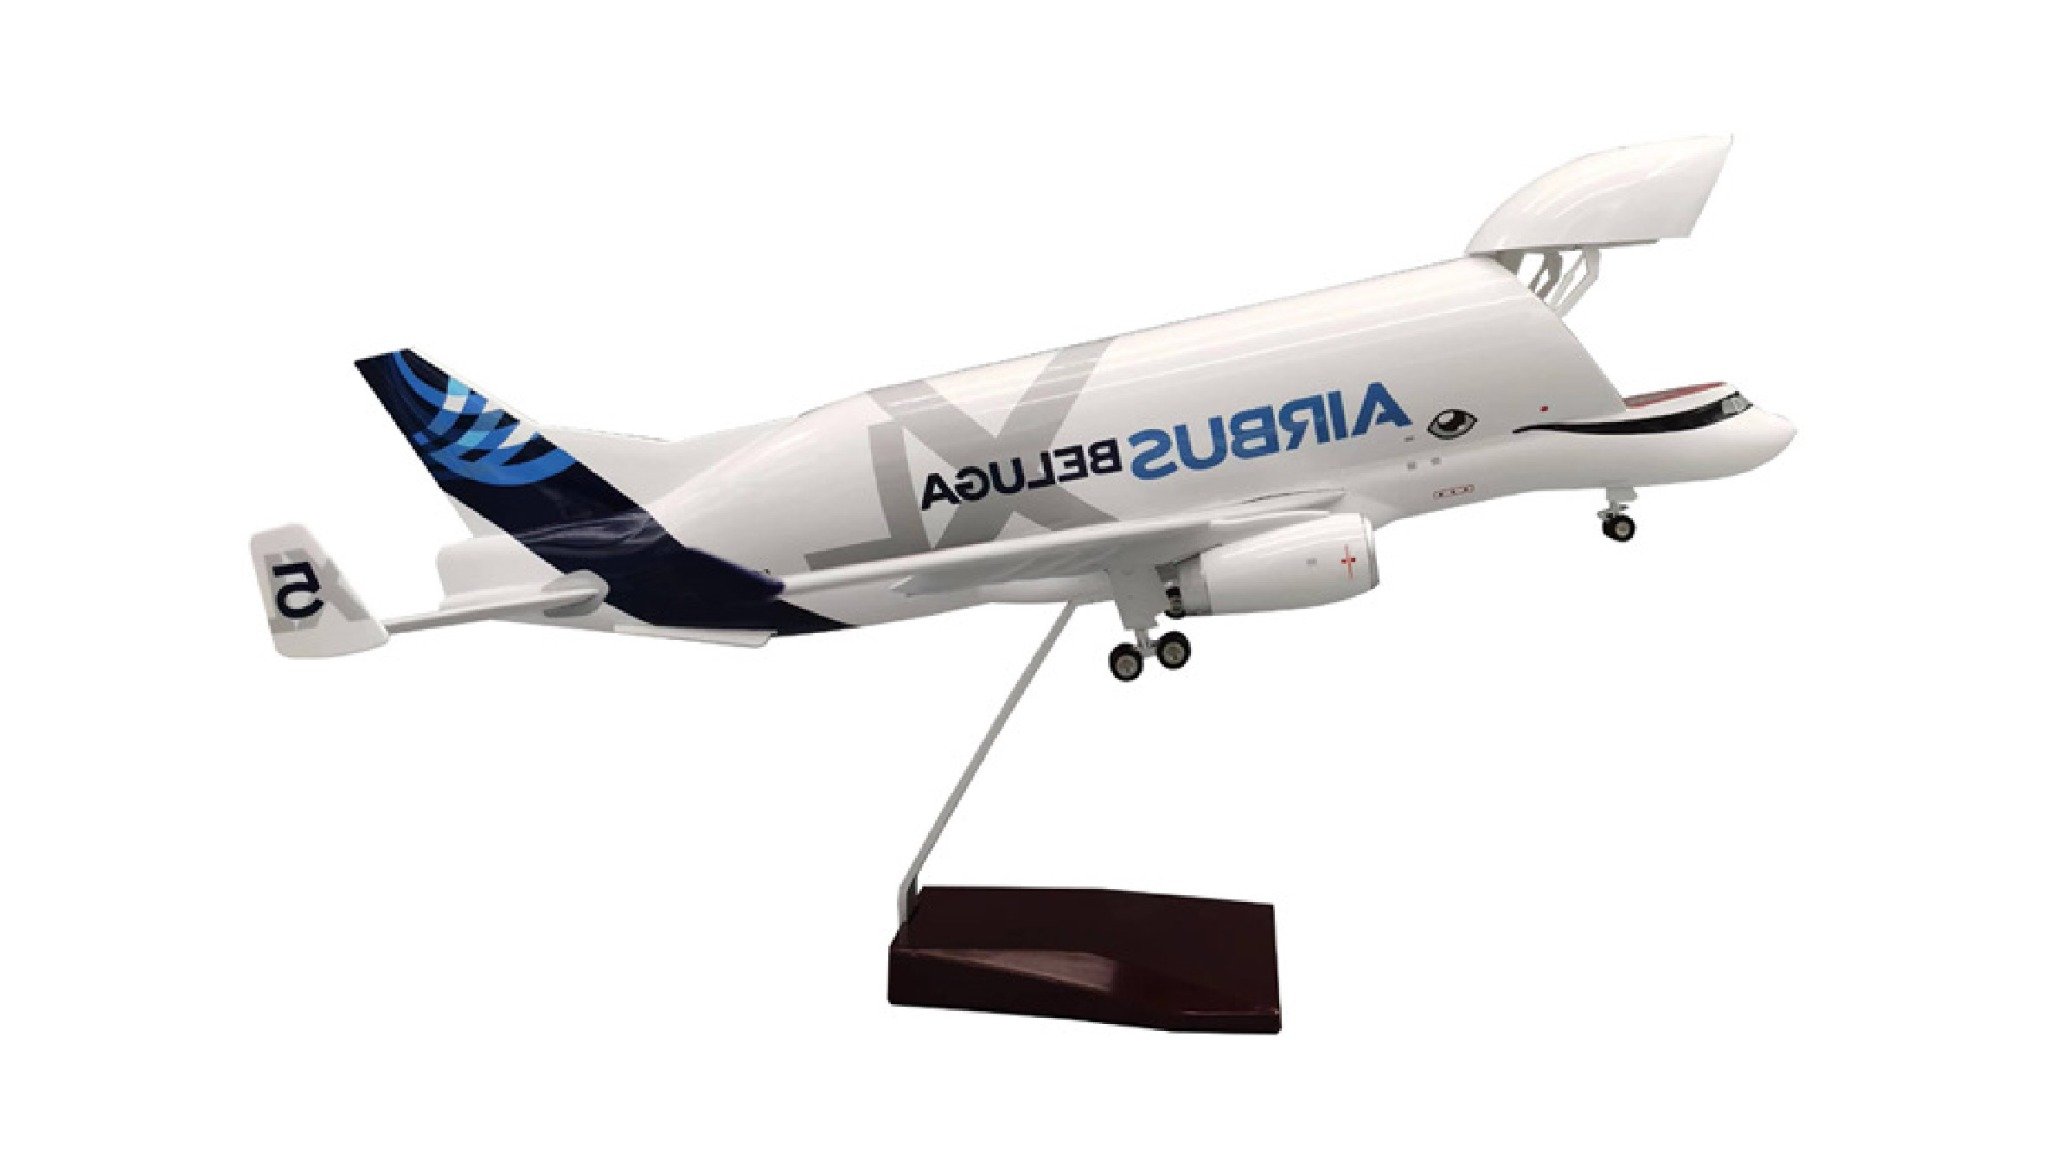  Mô hình máy bay vận tải Super Beluga Airbus A330 47cm 1:150 mở được khoang hàng MB47073 